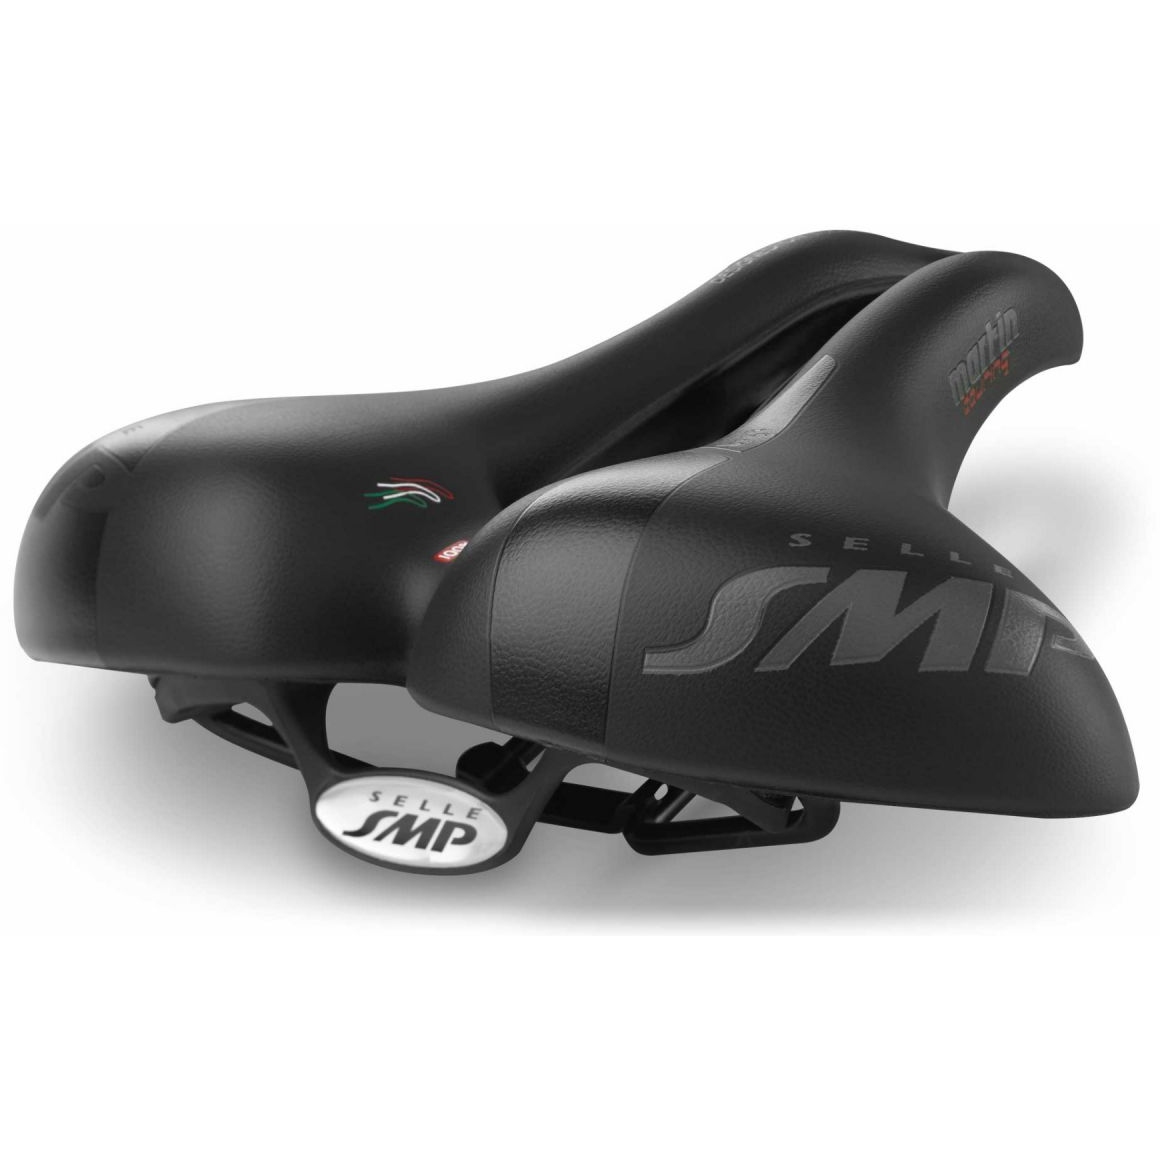 Productfoto van Selle SMP Martin Touring Large Saddle - black